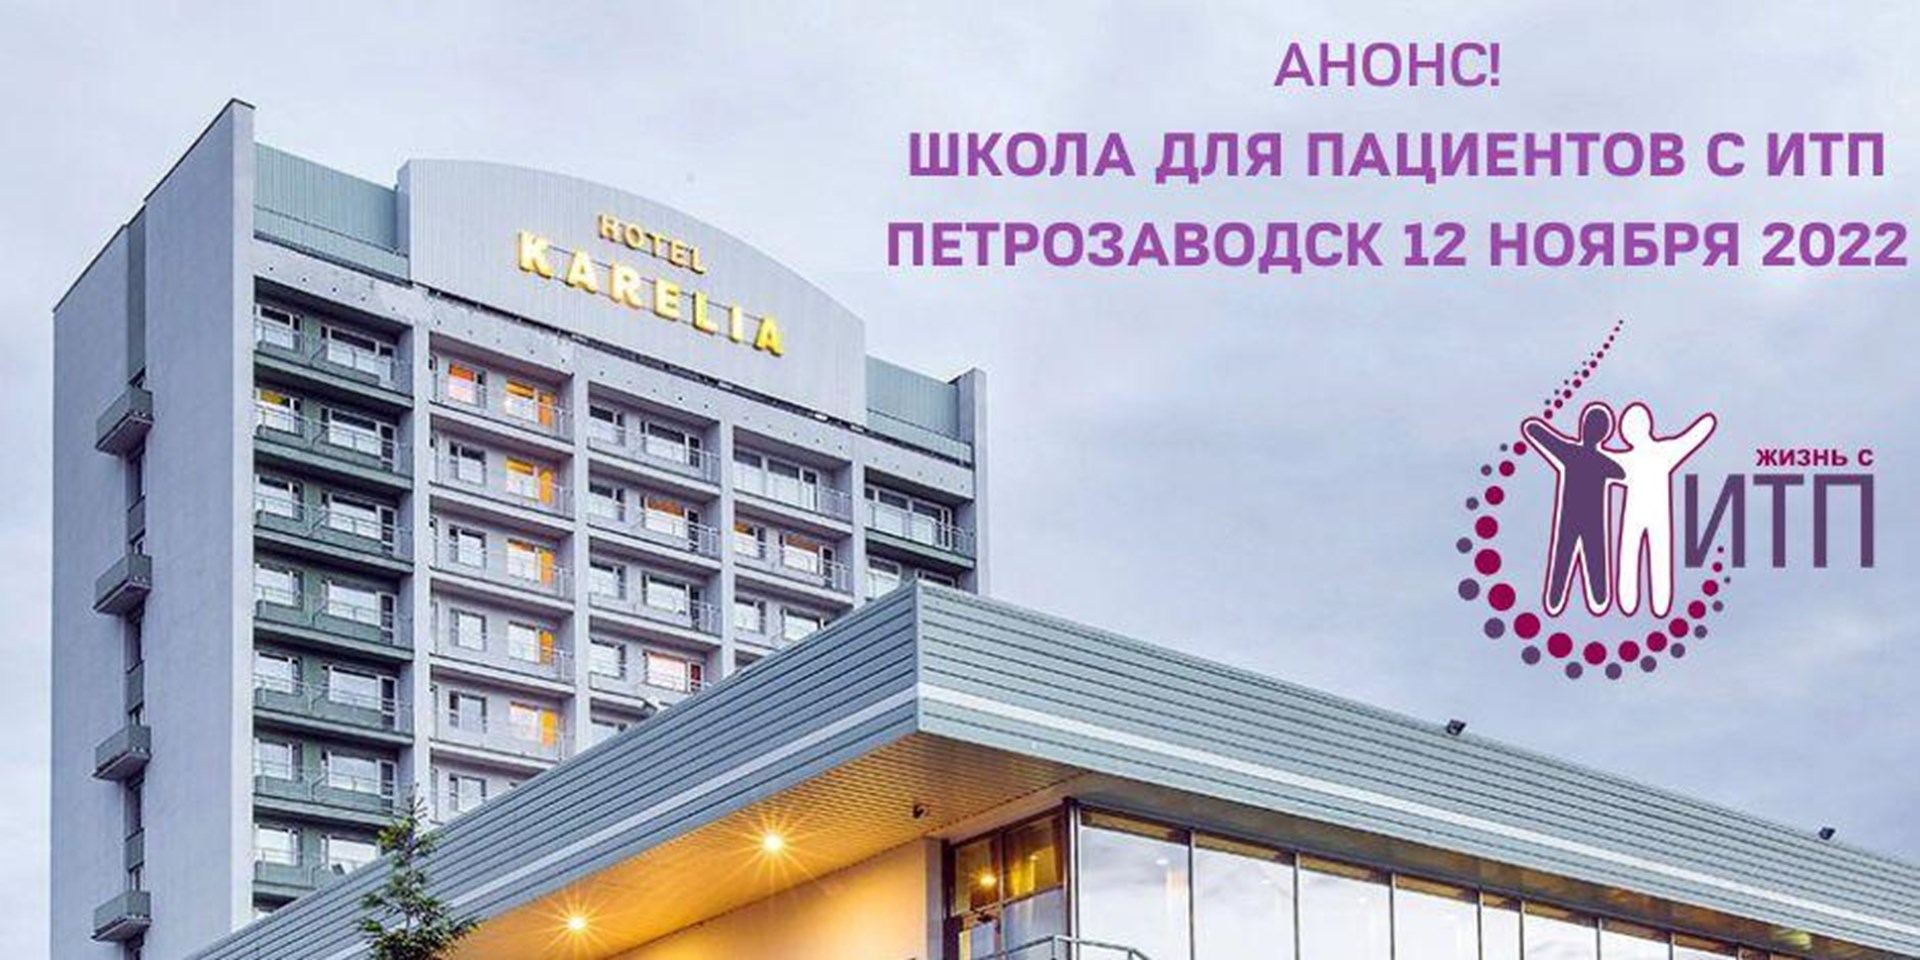 Петрозаводск. 12 ноября 2022 года состоится Школа ИТП для пациентов